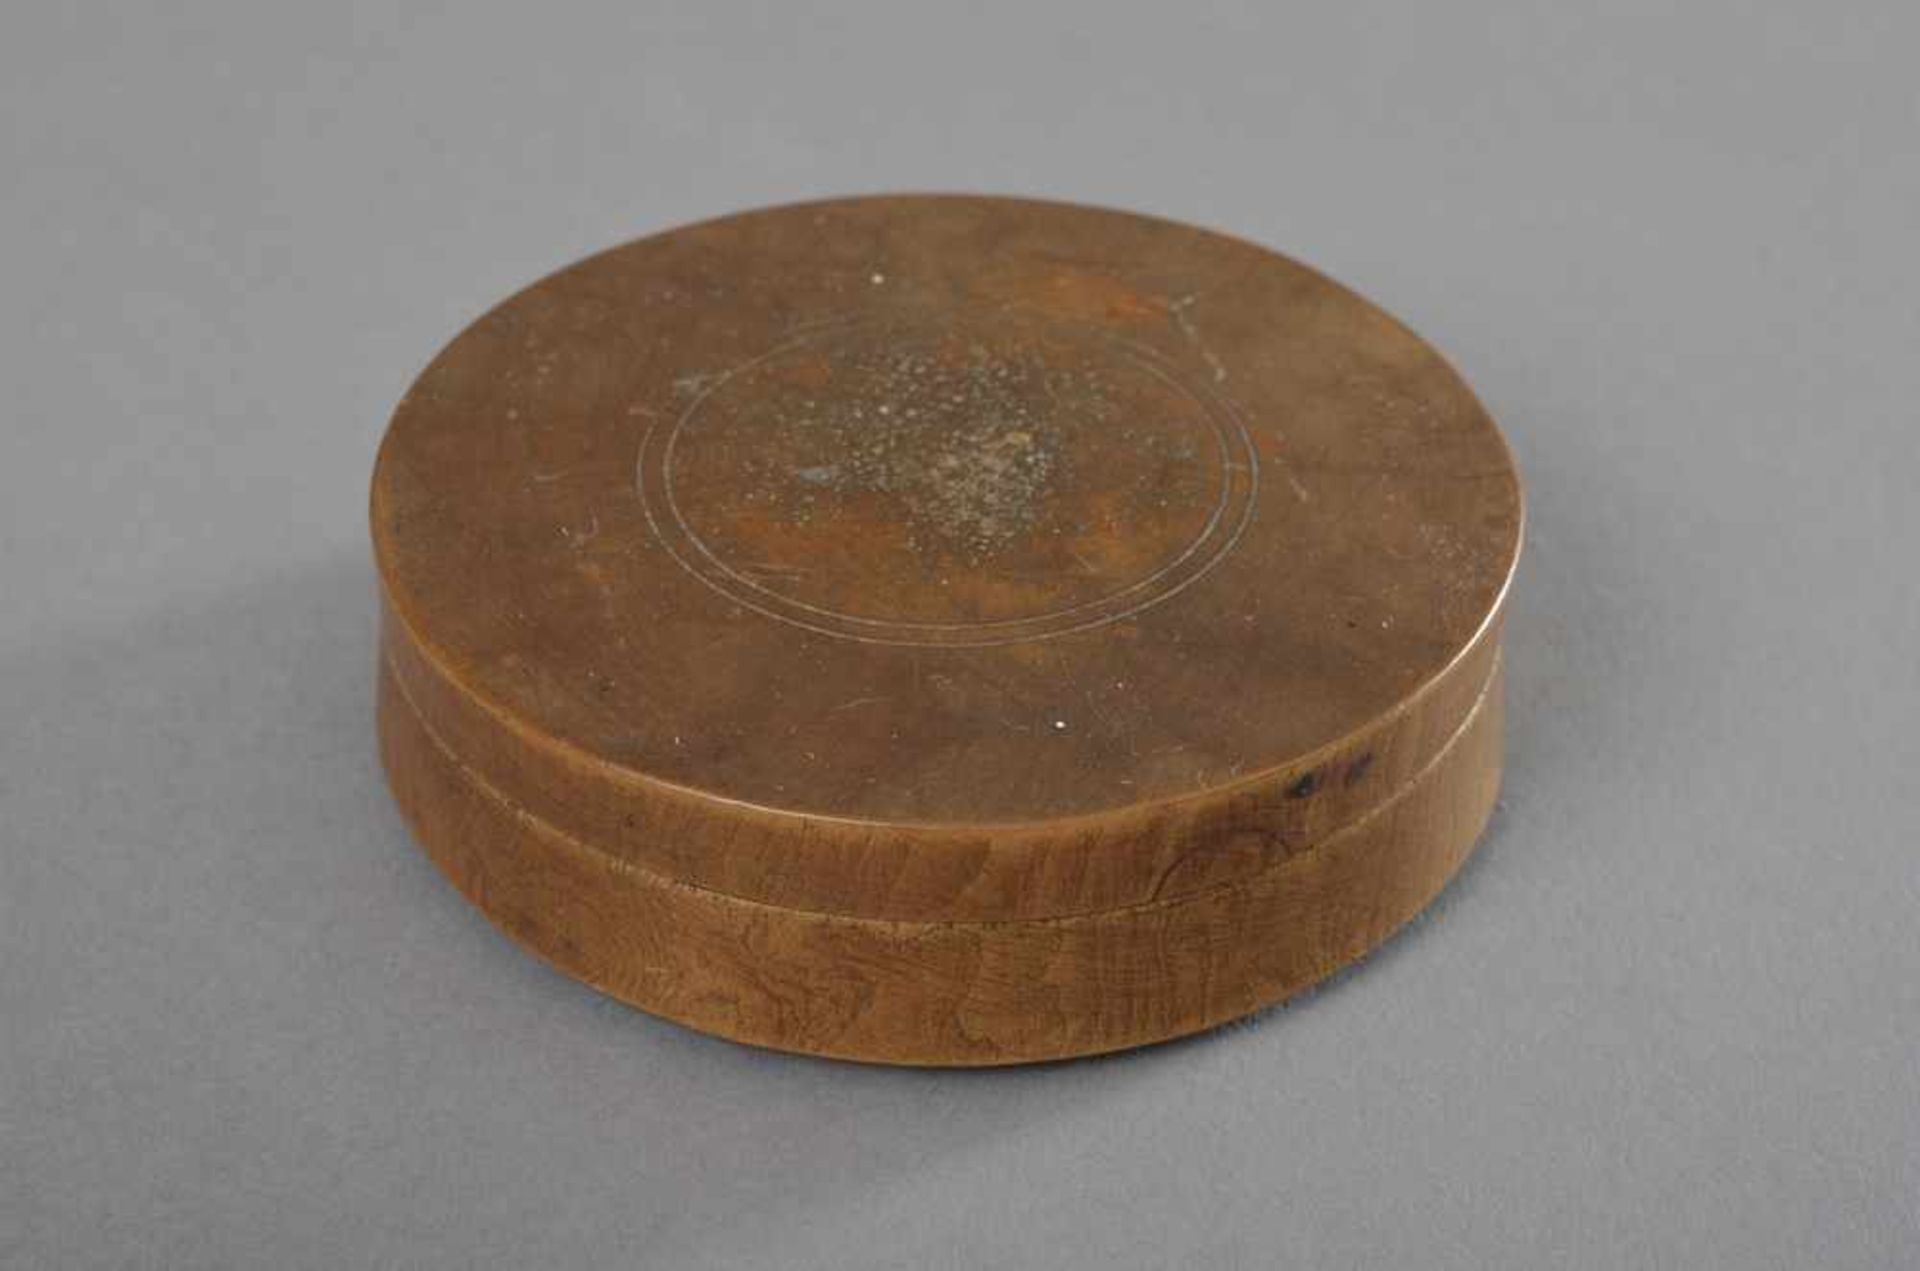 Chinesischer Kompass aus schwarz eingefärbtem Holz mit eingelassener Kompassnadel und Glasdeckel, - Bild 3 aus 3